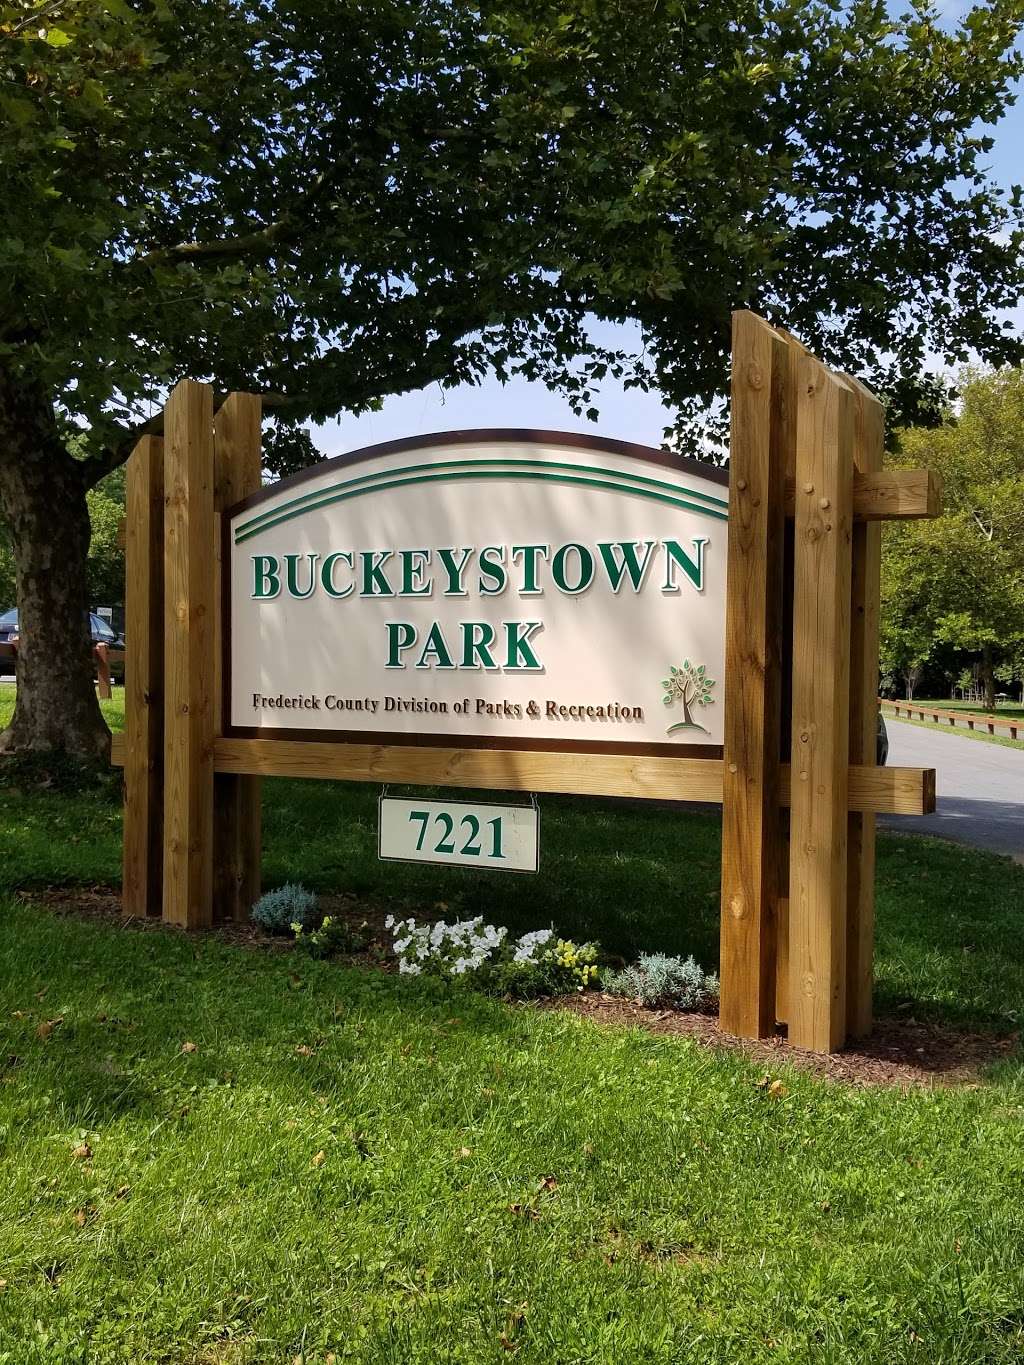 Buckeystown Park | 2171, 7221 Michaels Mill Rd, Adamstown, MD 21710